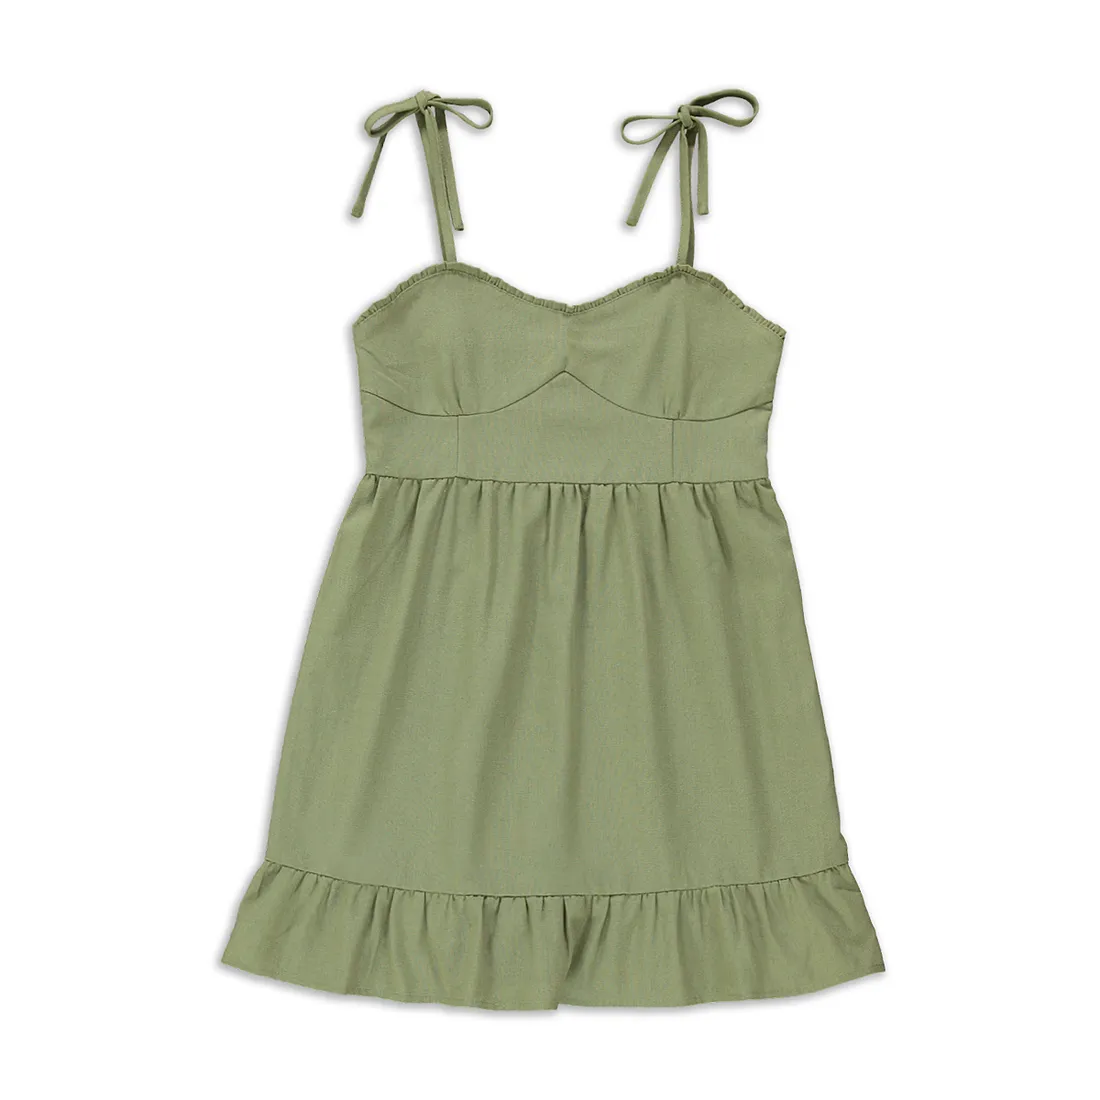 Linen corset dress green - GIRLS 7-15 YEARS Dresses & Jumpsuits | Ackermans